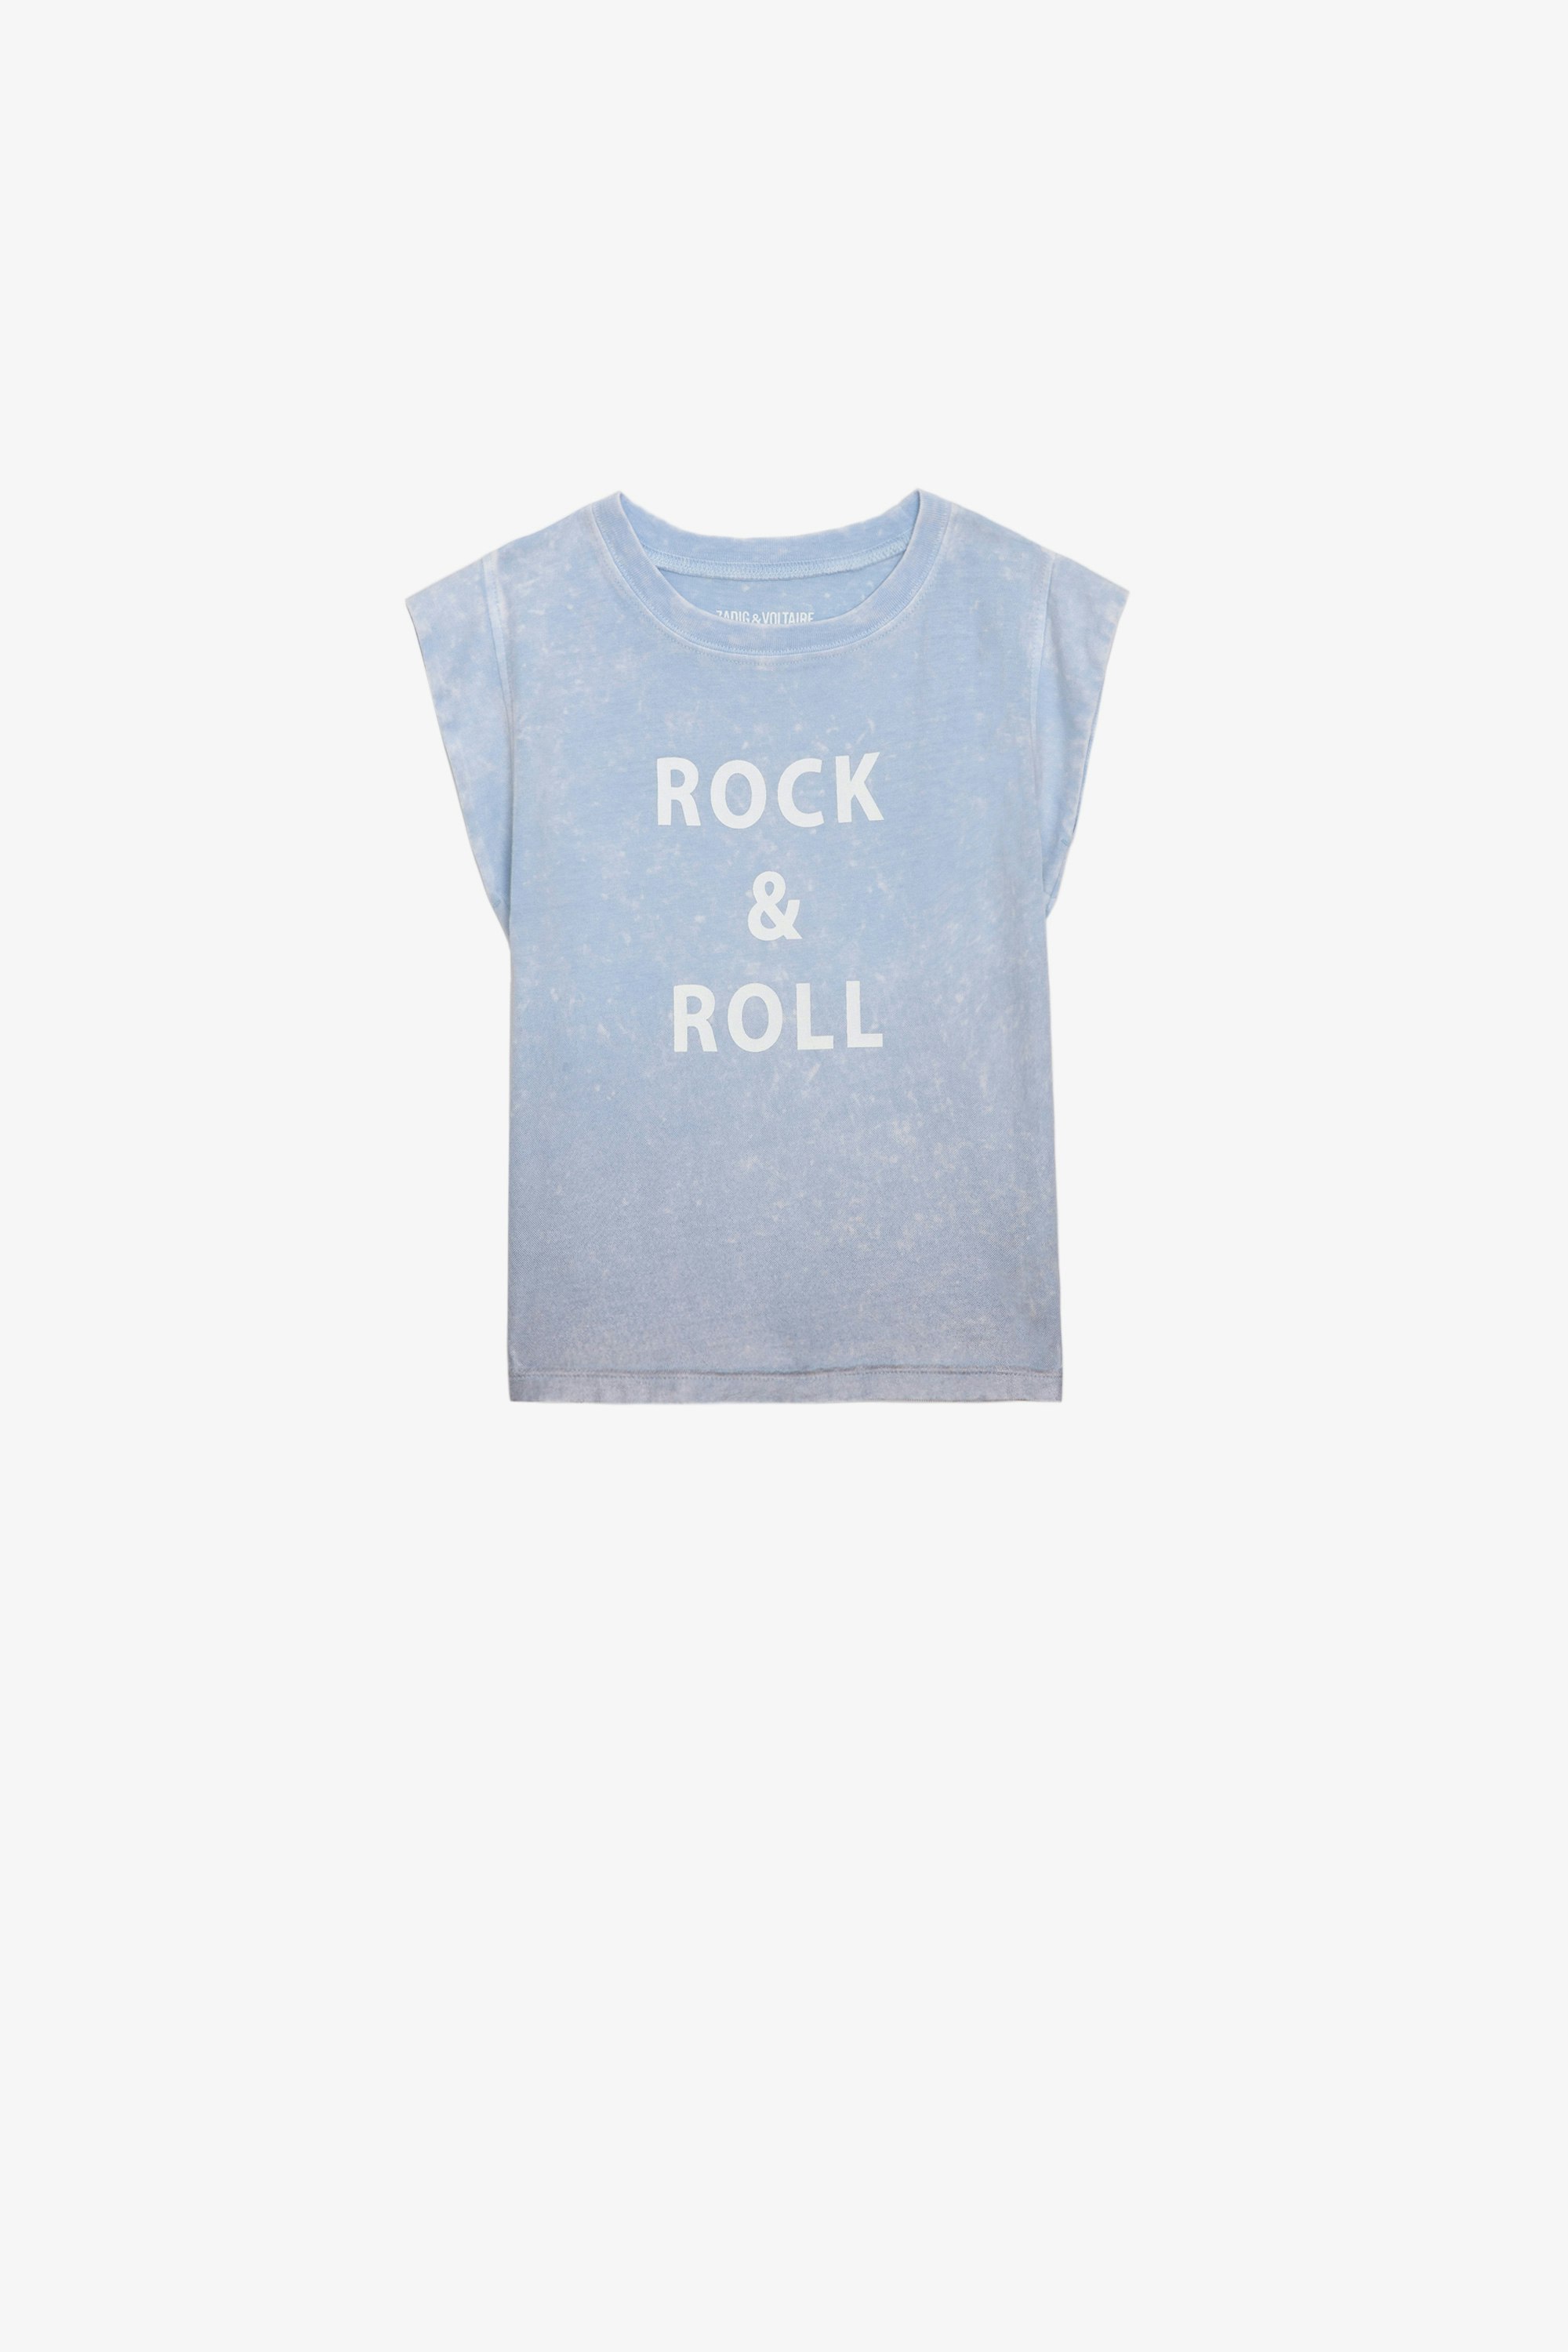 Alin Girls’ T-shirt - Girls’ short-sleeved T-shirt with “Rock & Roll” slogan.